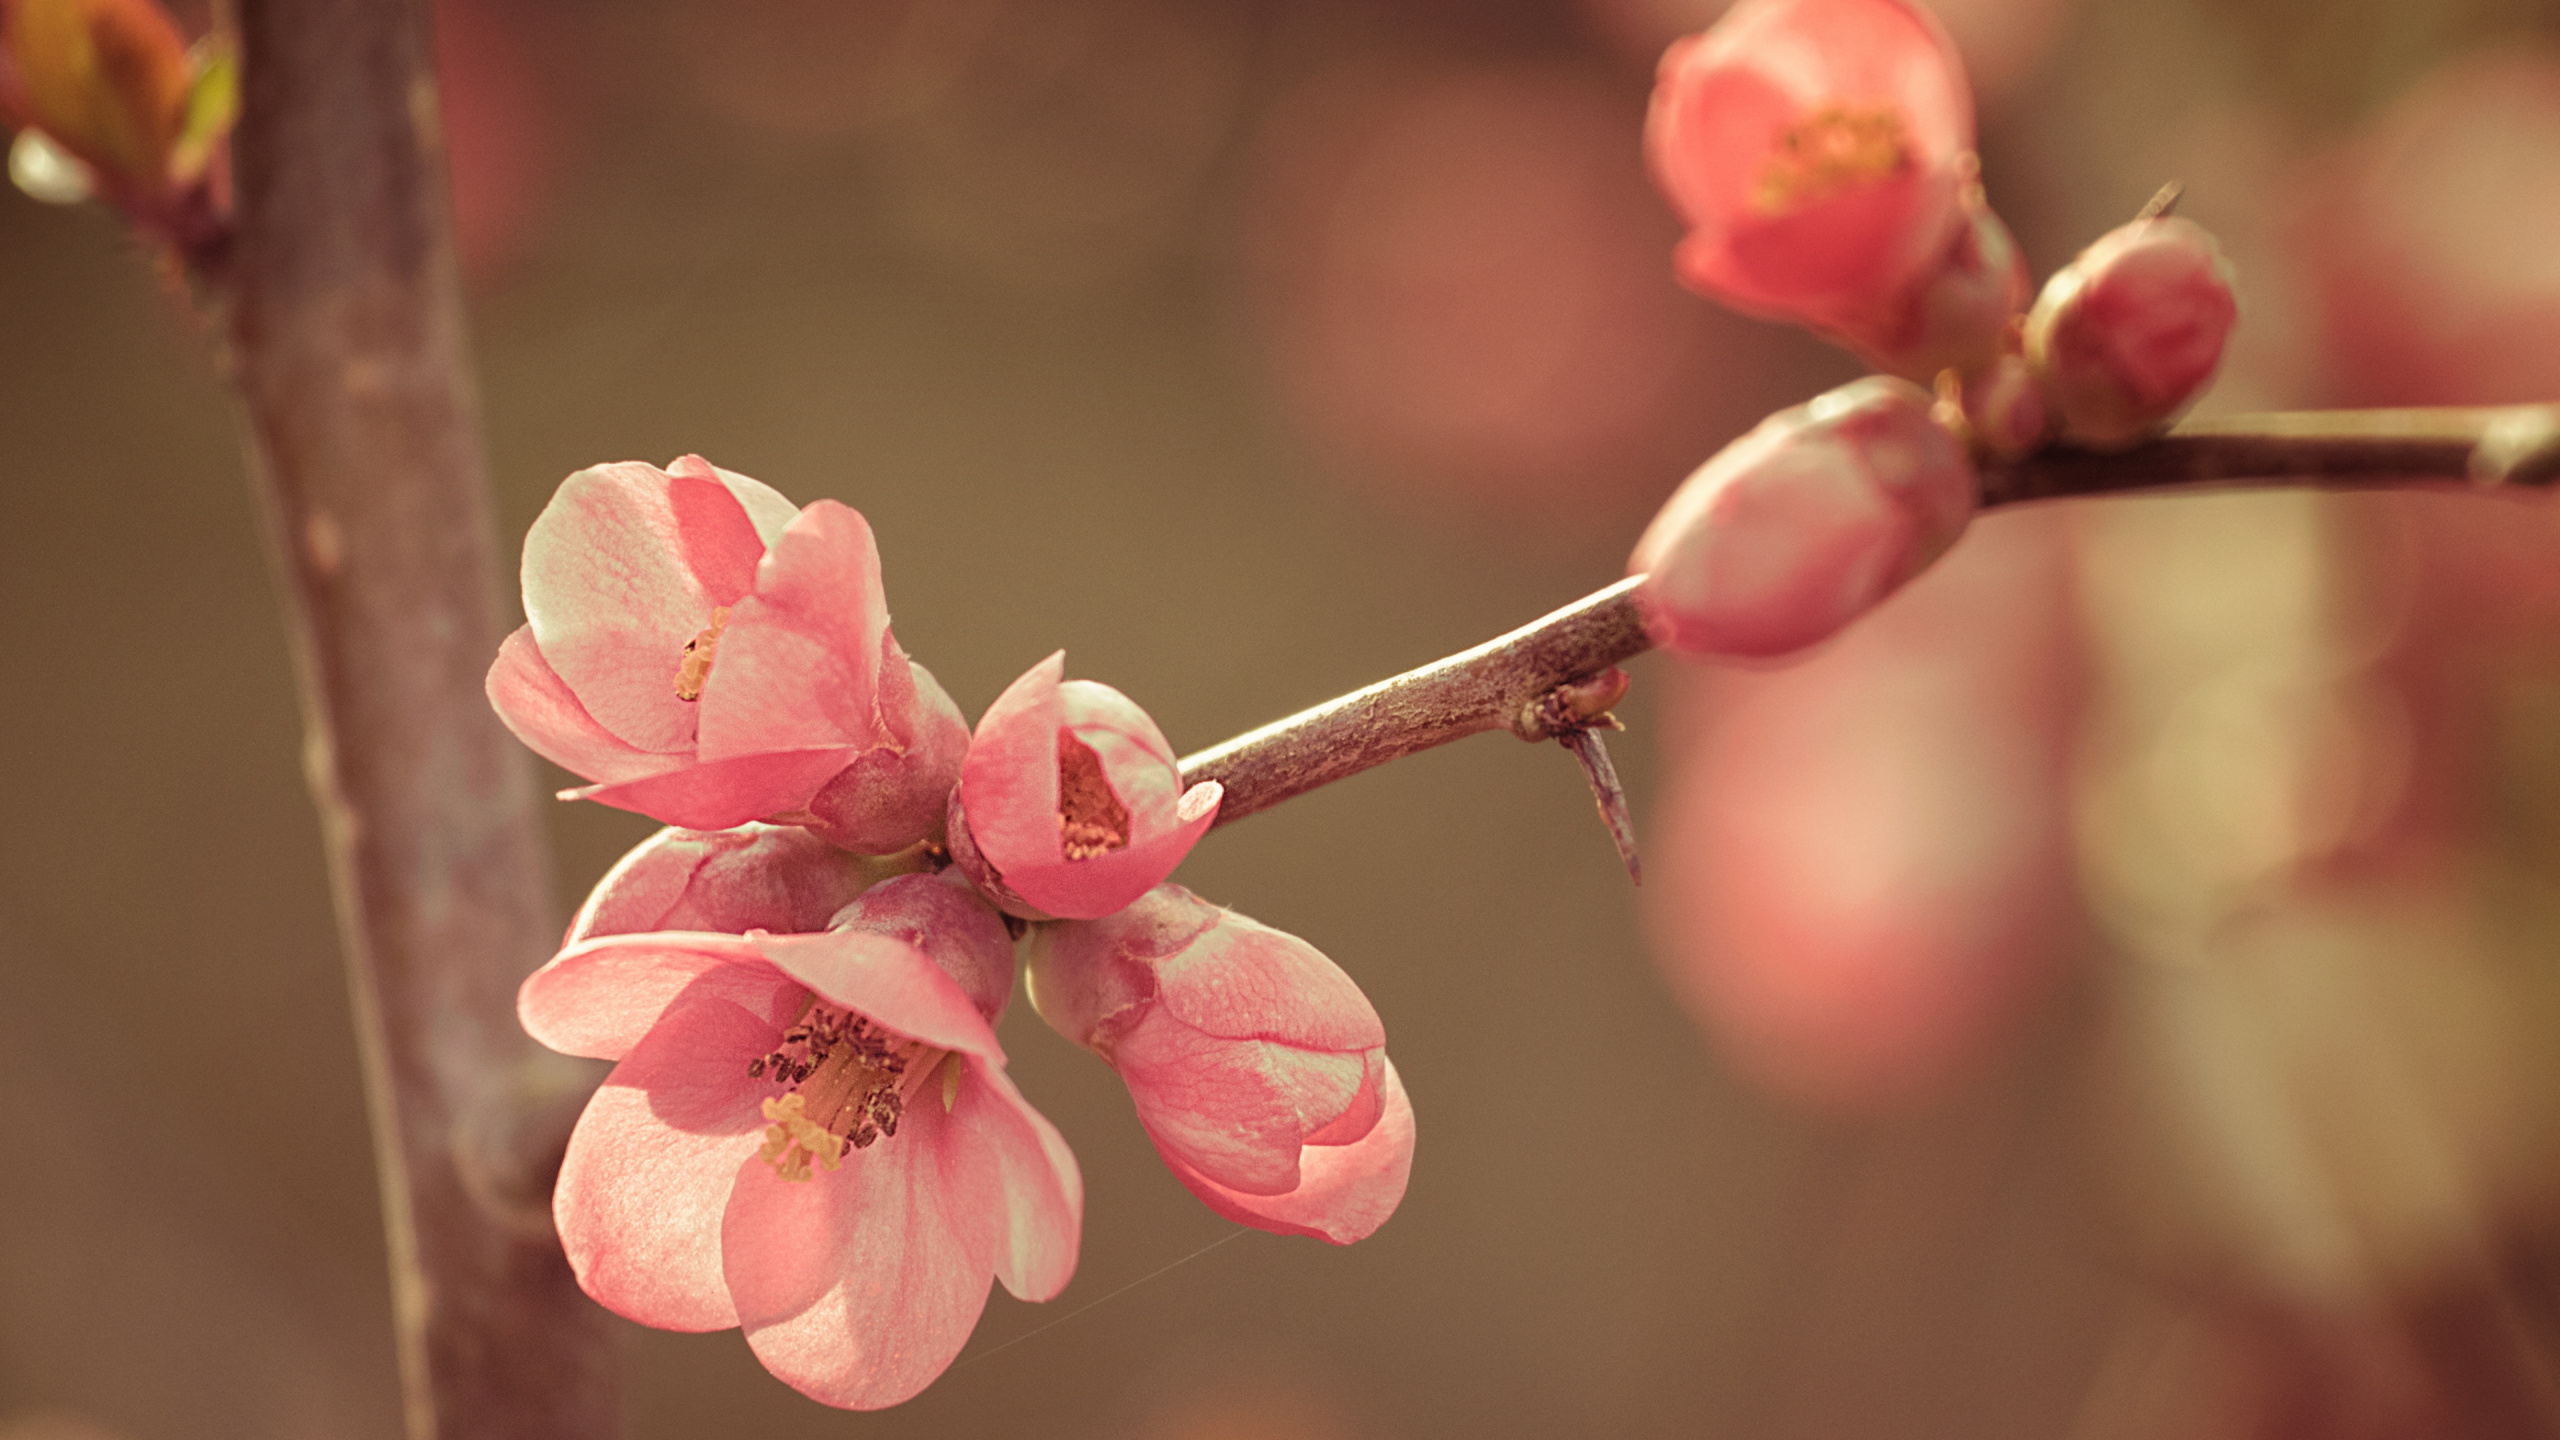 樱花, 粉红色, 弹簧, 开花, 树枝 壁纸 2560x1440 允许